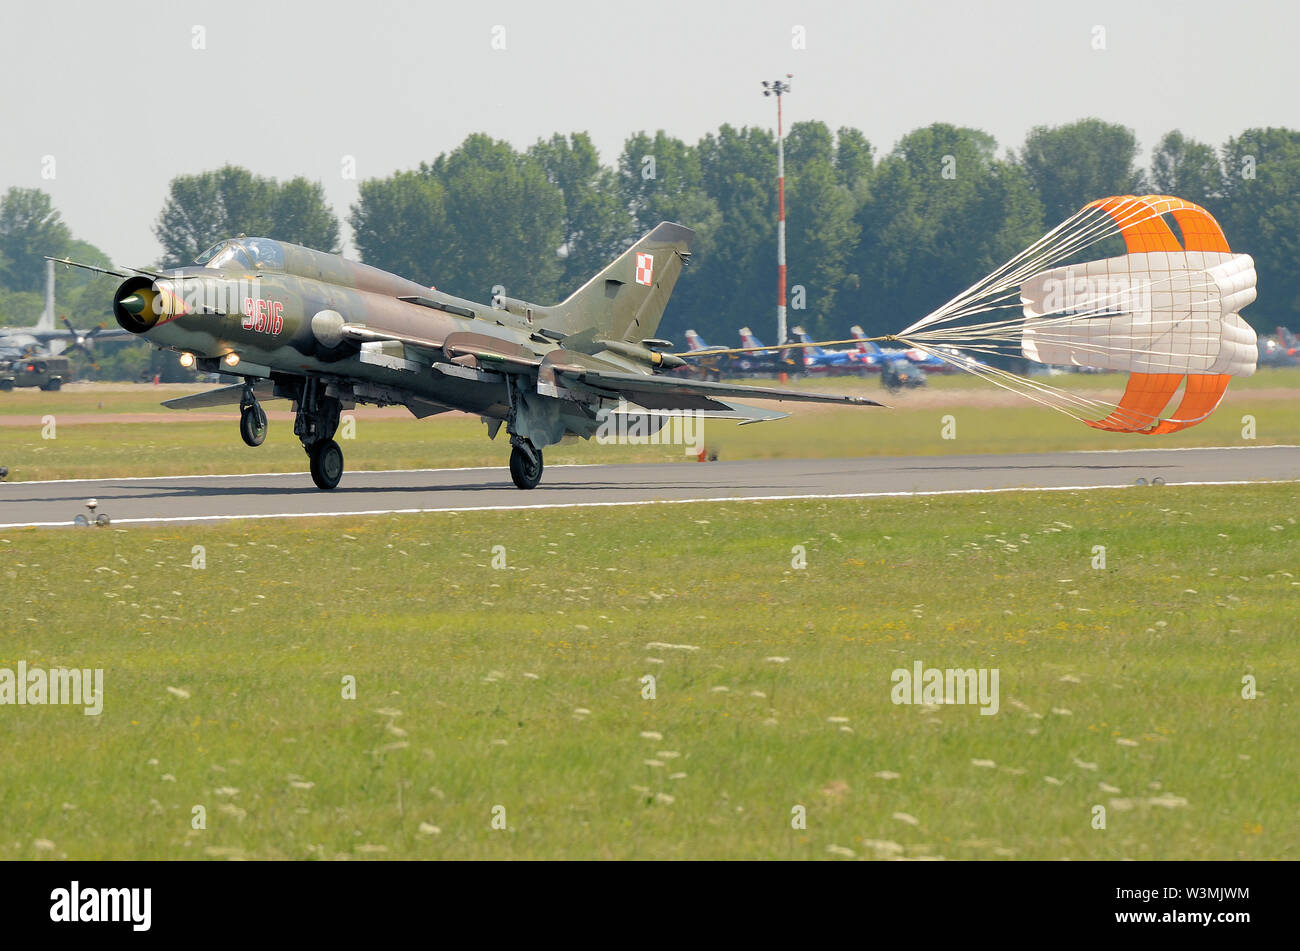 Suchoi Su-22 NATO-reporting Name: Fitter ist eine sowjetische Jagdbomber. Die polnische Luftwaffe. Von Ostblock verwendet. Sowjetische Ära des Kalten Krieges. Bremsschirm Landung Stockfoto